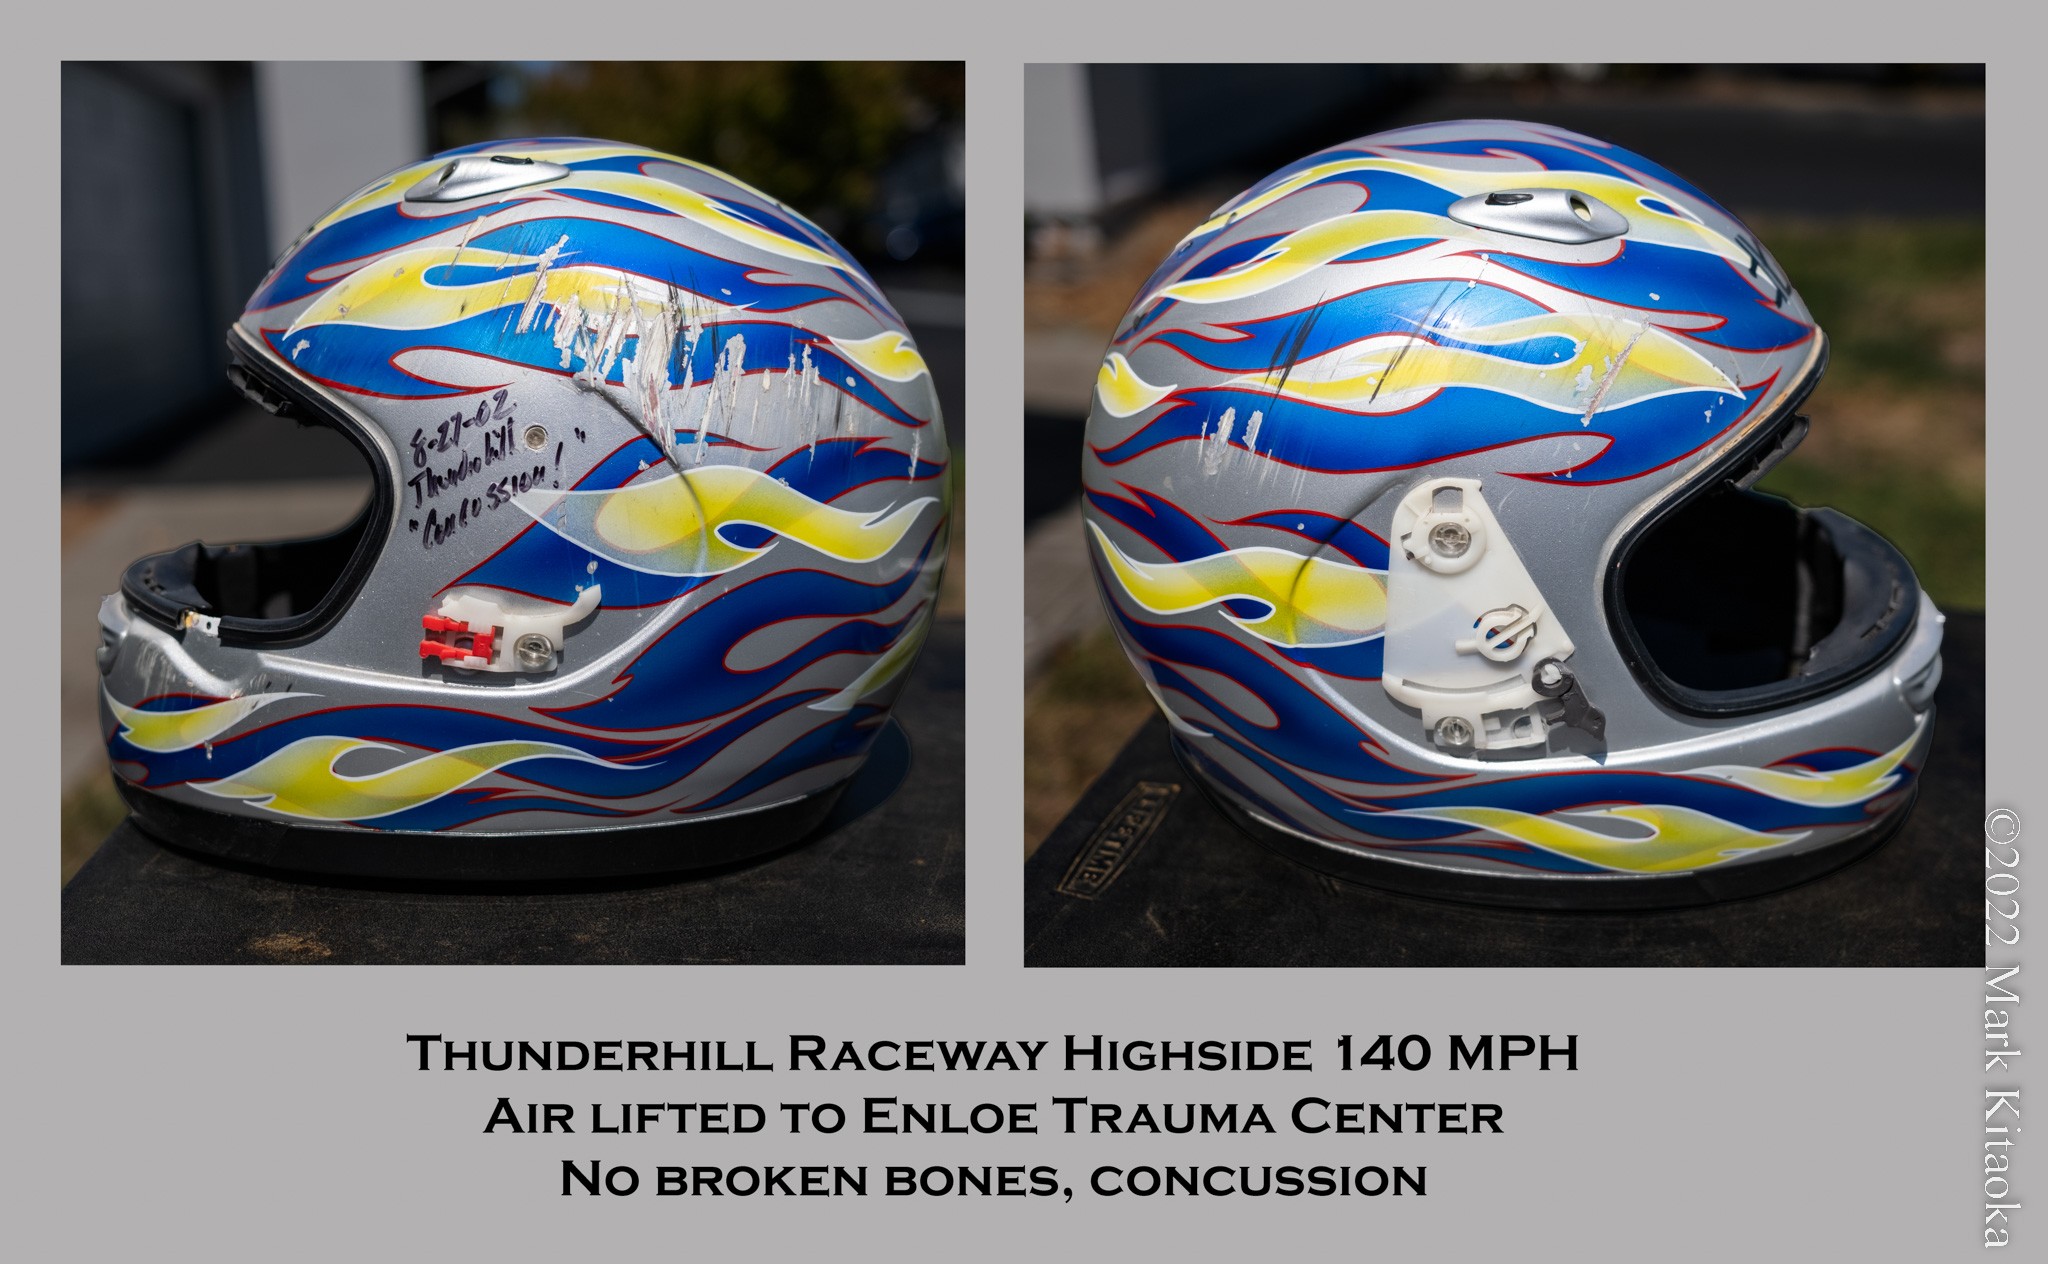 Helmet after crash at racetrack